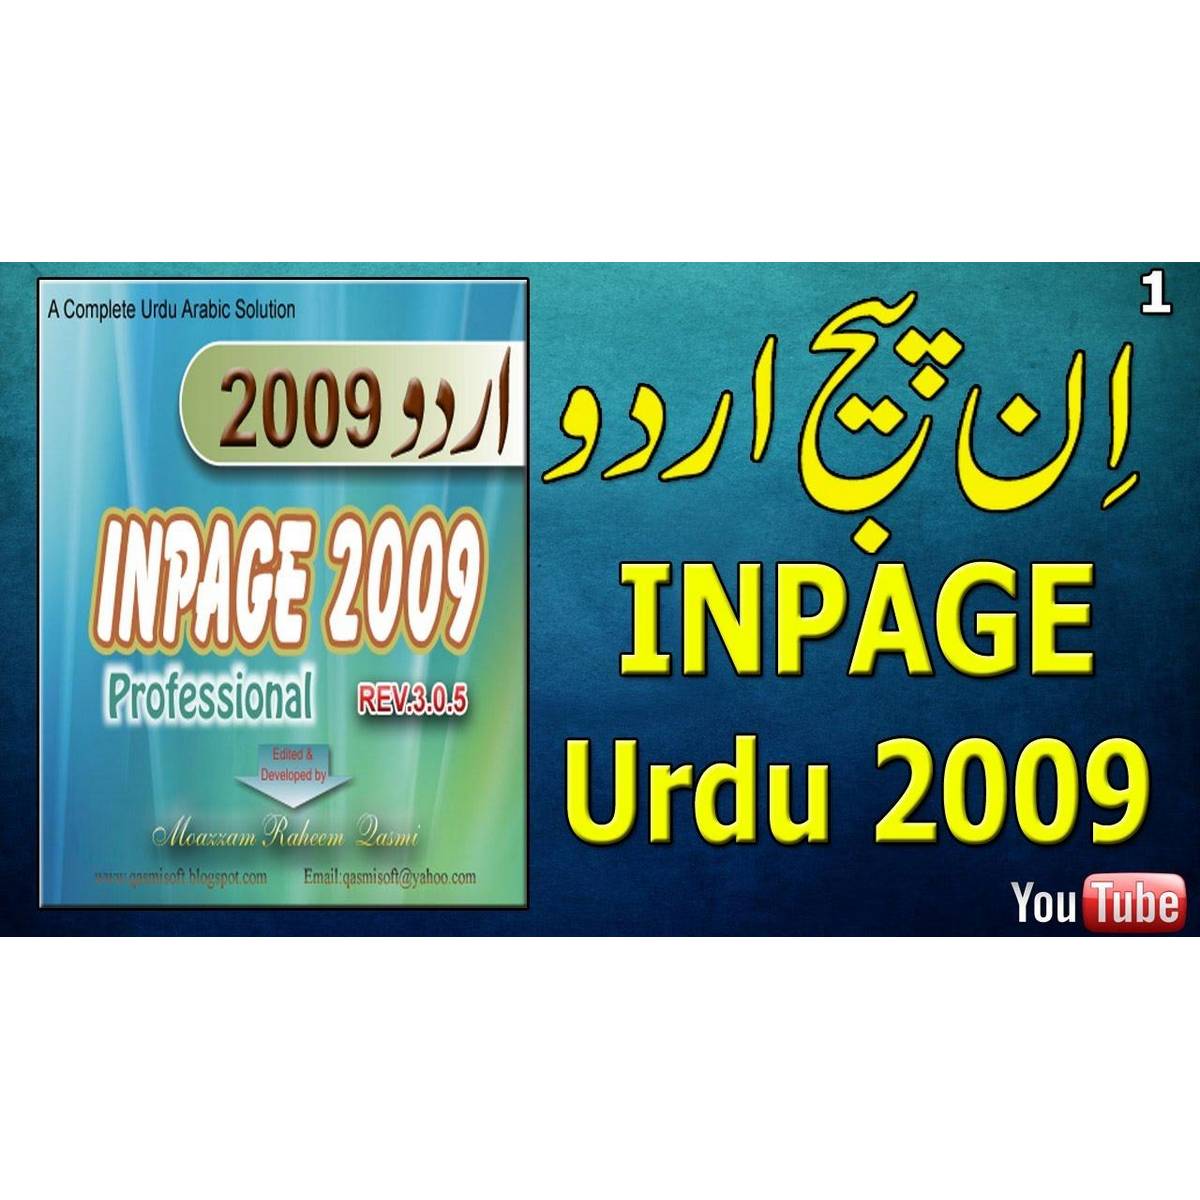 urdu inpage online